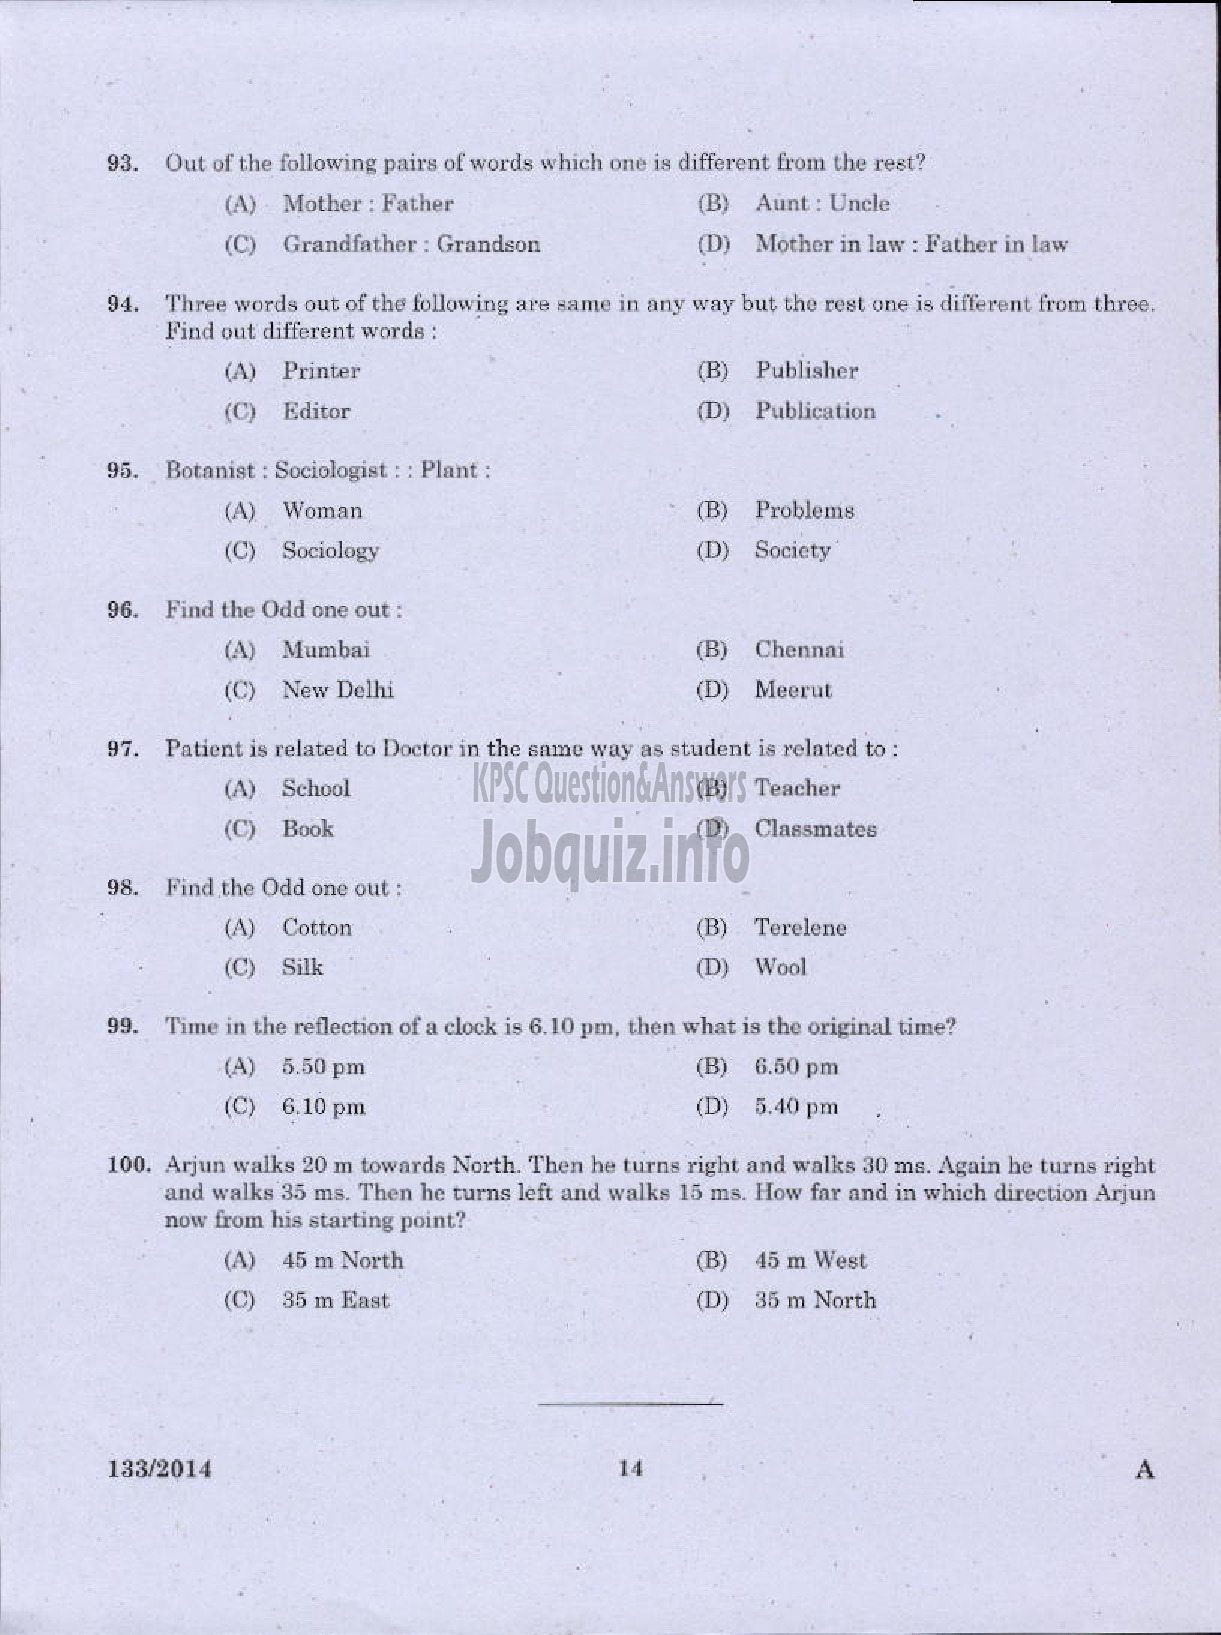 Kerala PSC Question Paper - EXCISE GUARD/WOMEN EXCISE GUARDS SR FROM ST EXCISE WYND/WOMEN CIVIL EXCISE OFFICER/CIVIL EXCISE OFFICER EXCISE-12